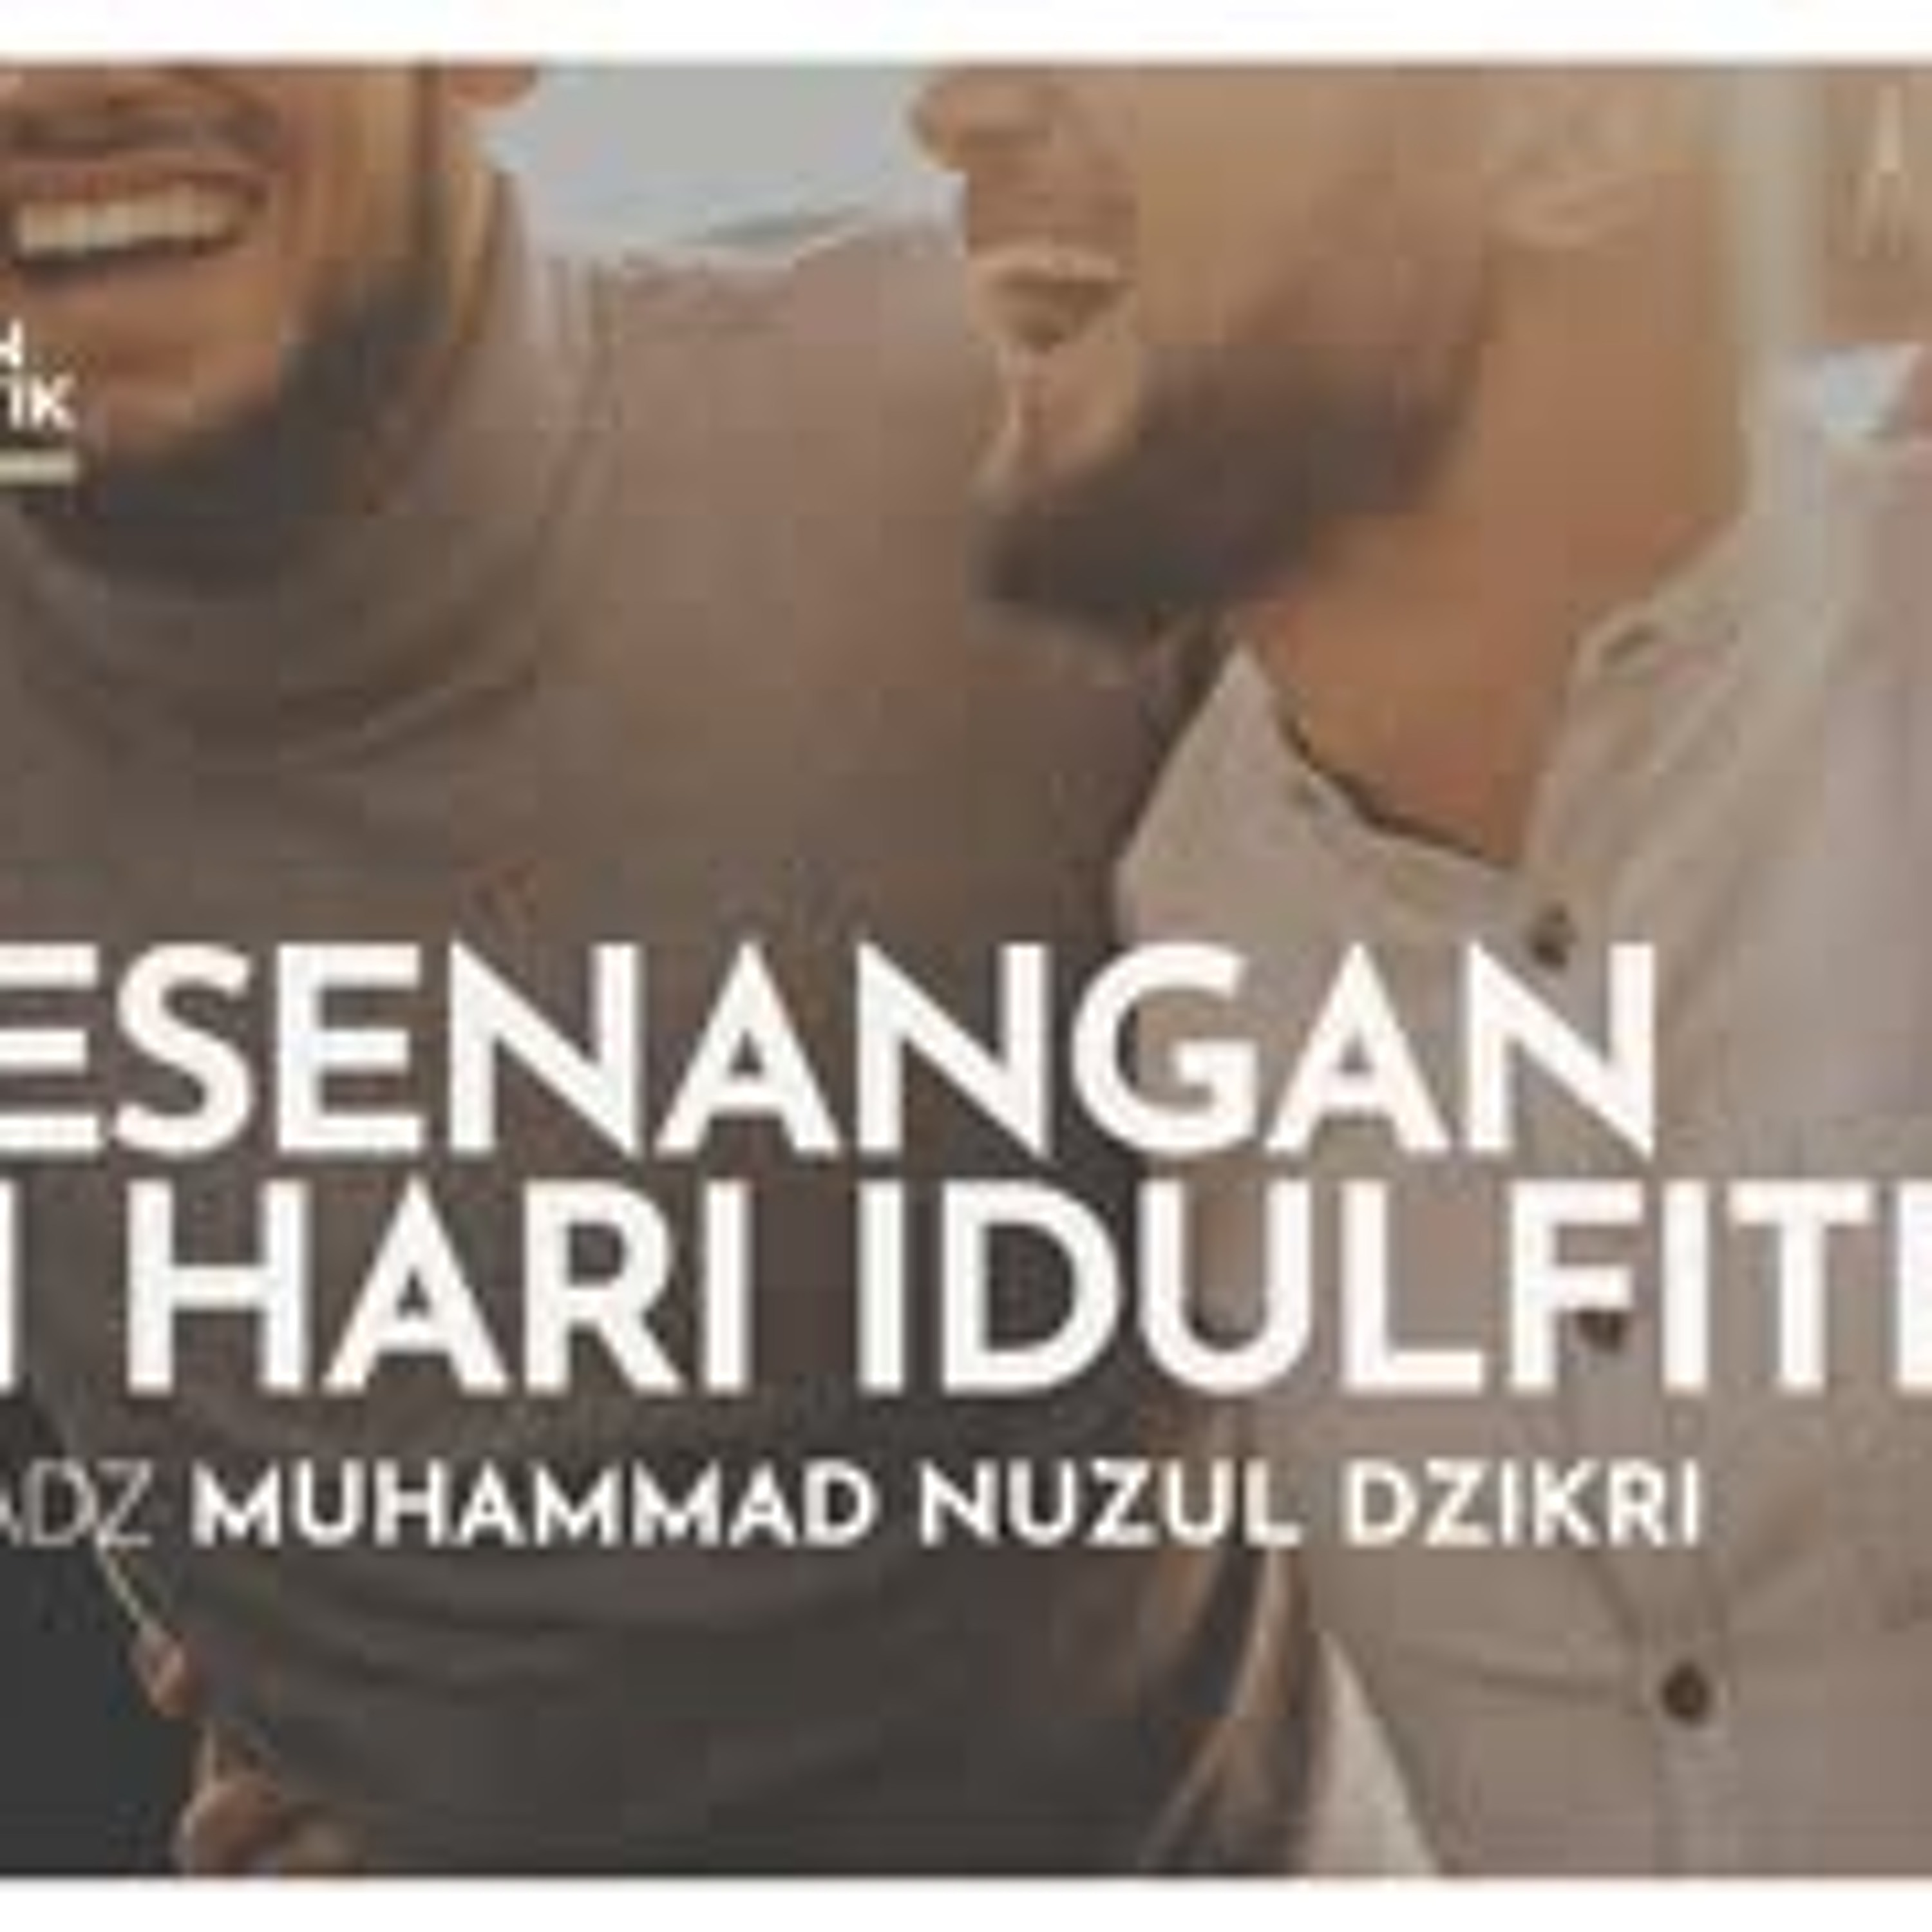 Kajian Tematik Syawwal 01. ”KESENANGAN DI HARI IDULFITRI” - Ustadz Muhammad Nuzul Dzikri